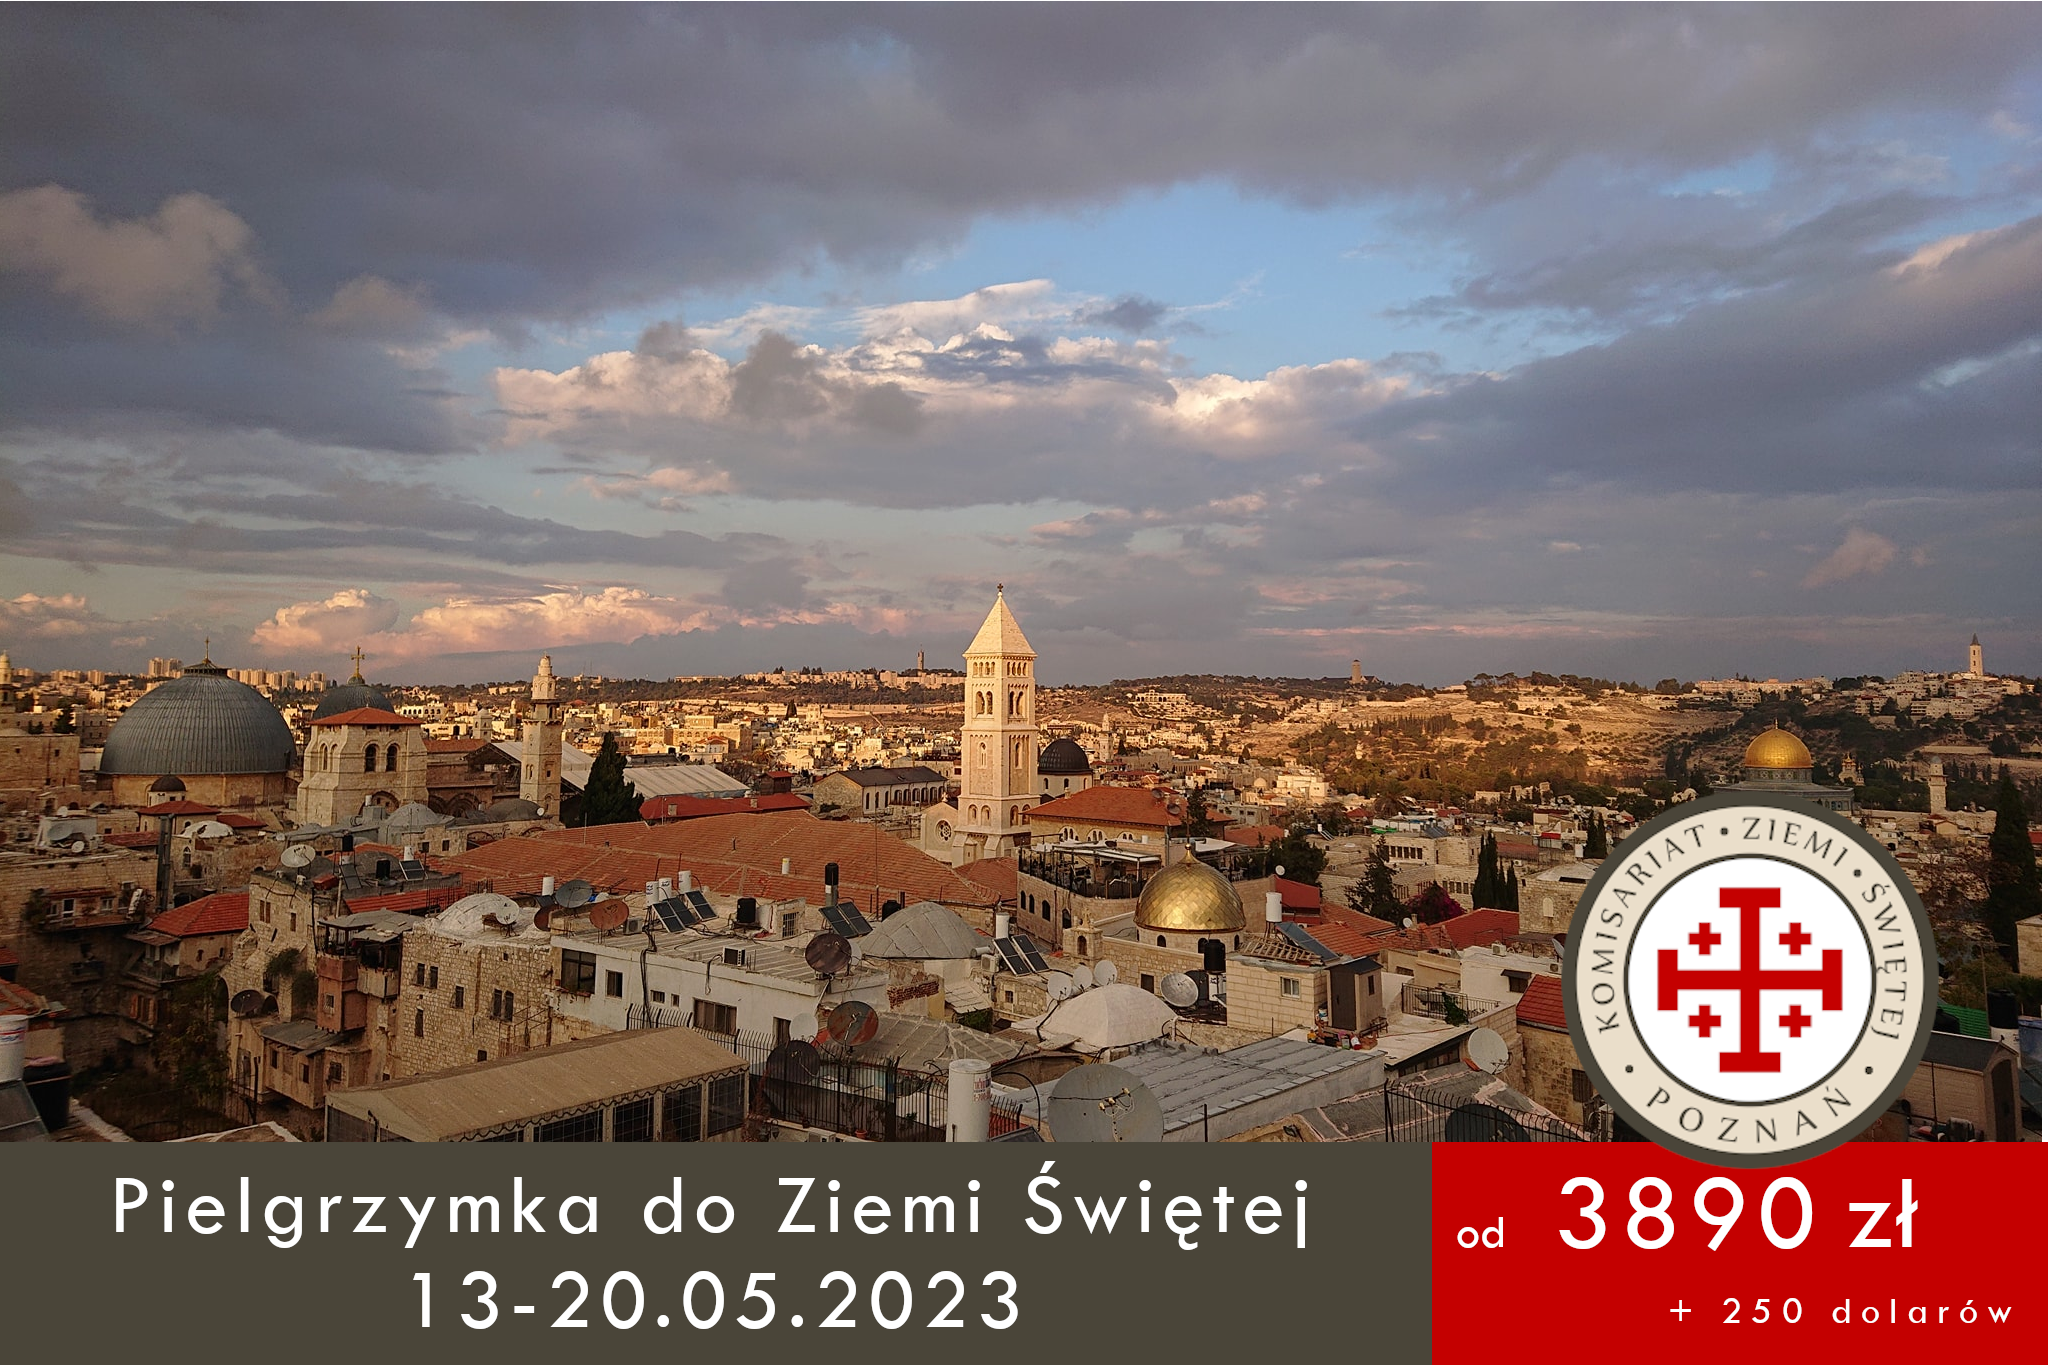 You are currently viewing Pielgrzymka do Ziemi Świętej 13-20.05.2023